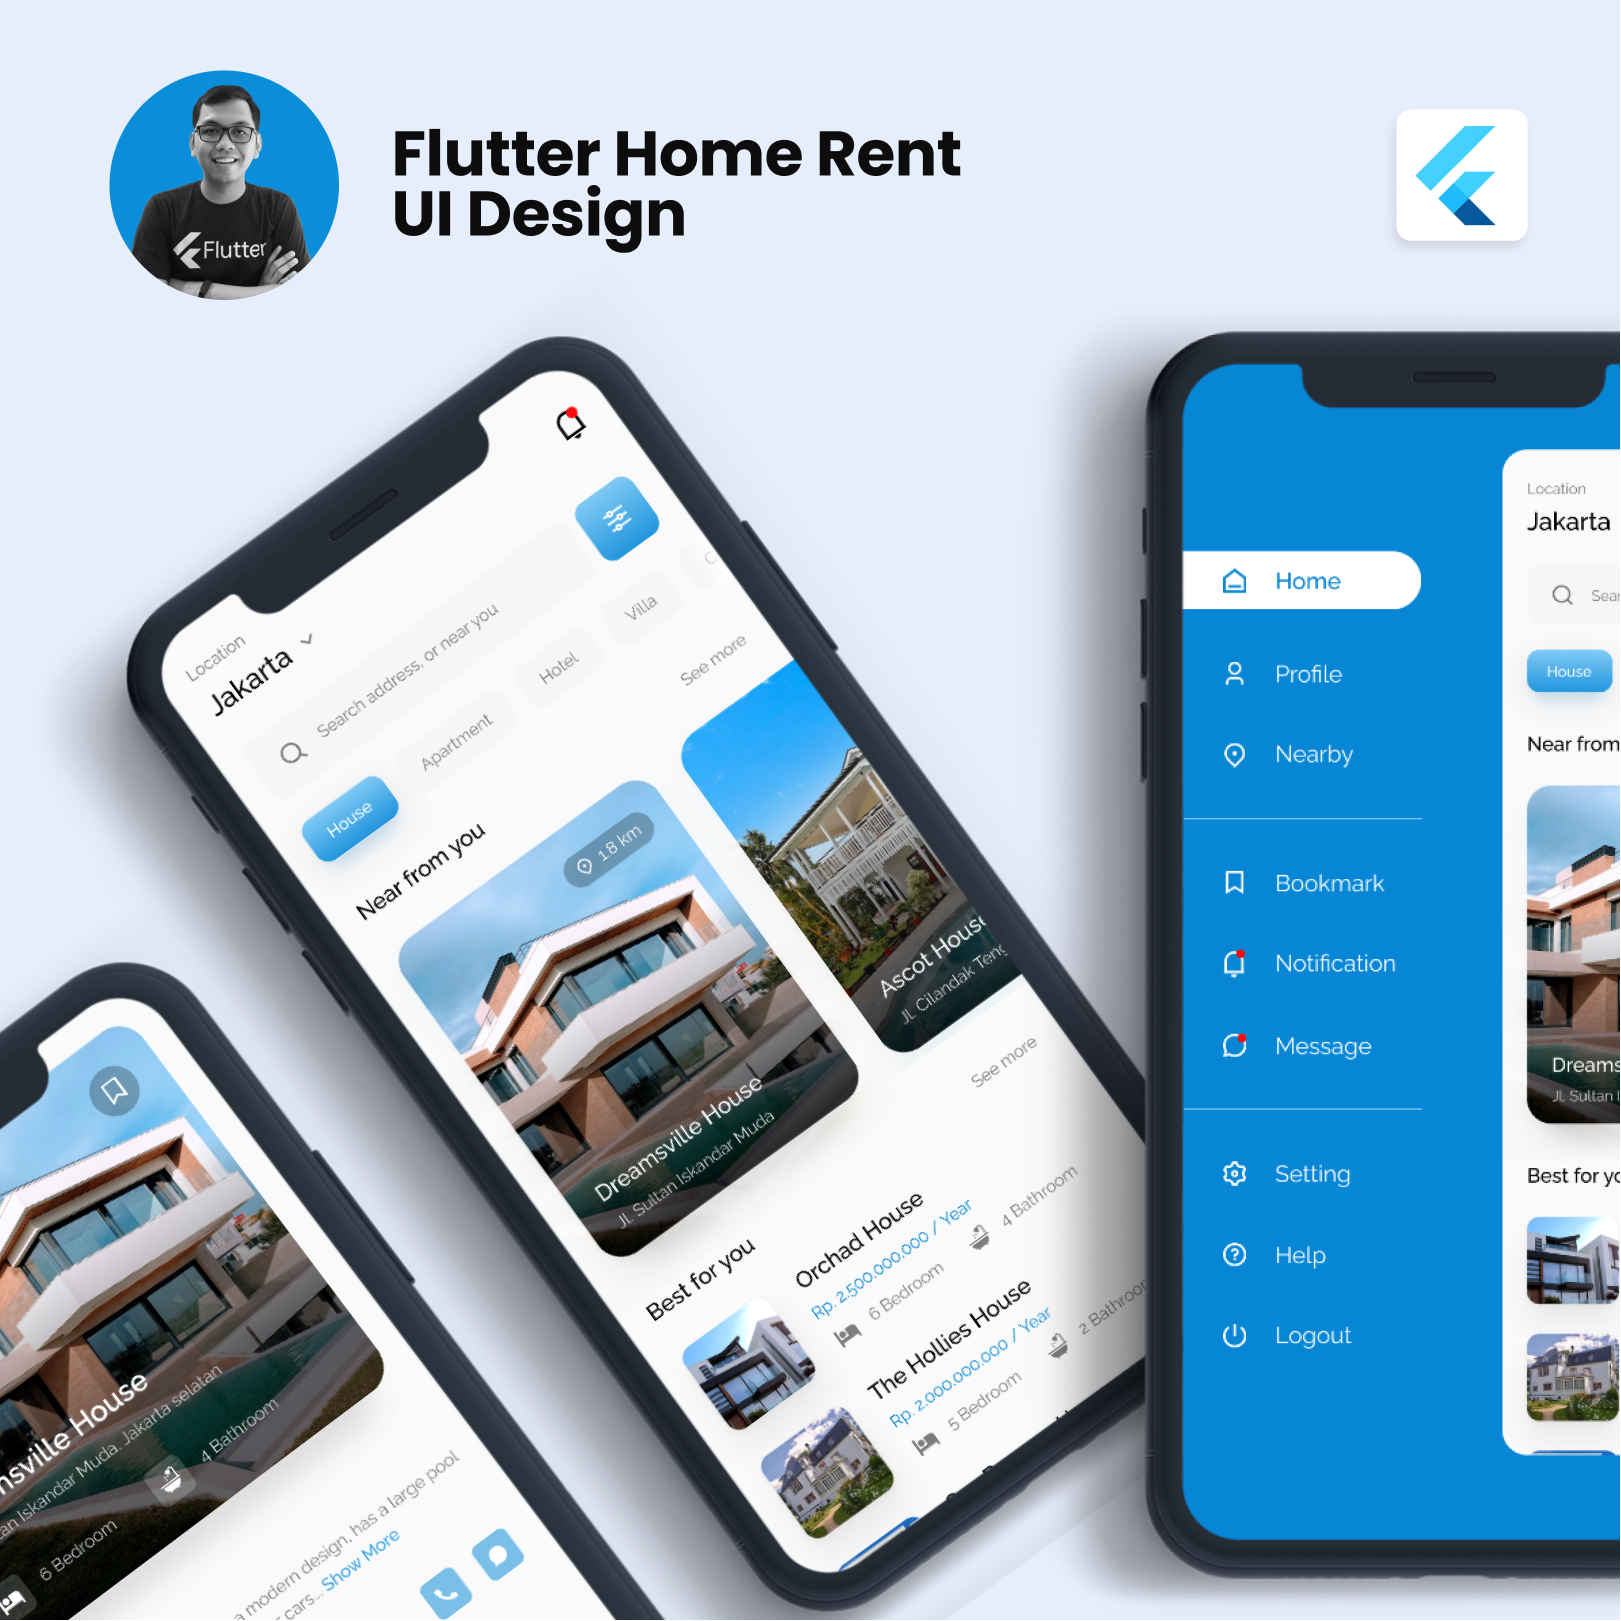 Flutter UI Real Estate Home Rent App UI Design with Drawer Animation